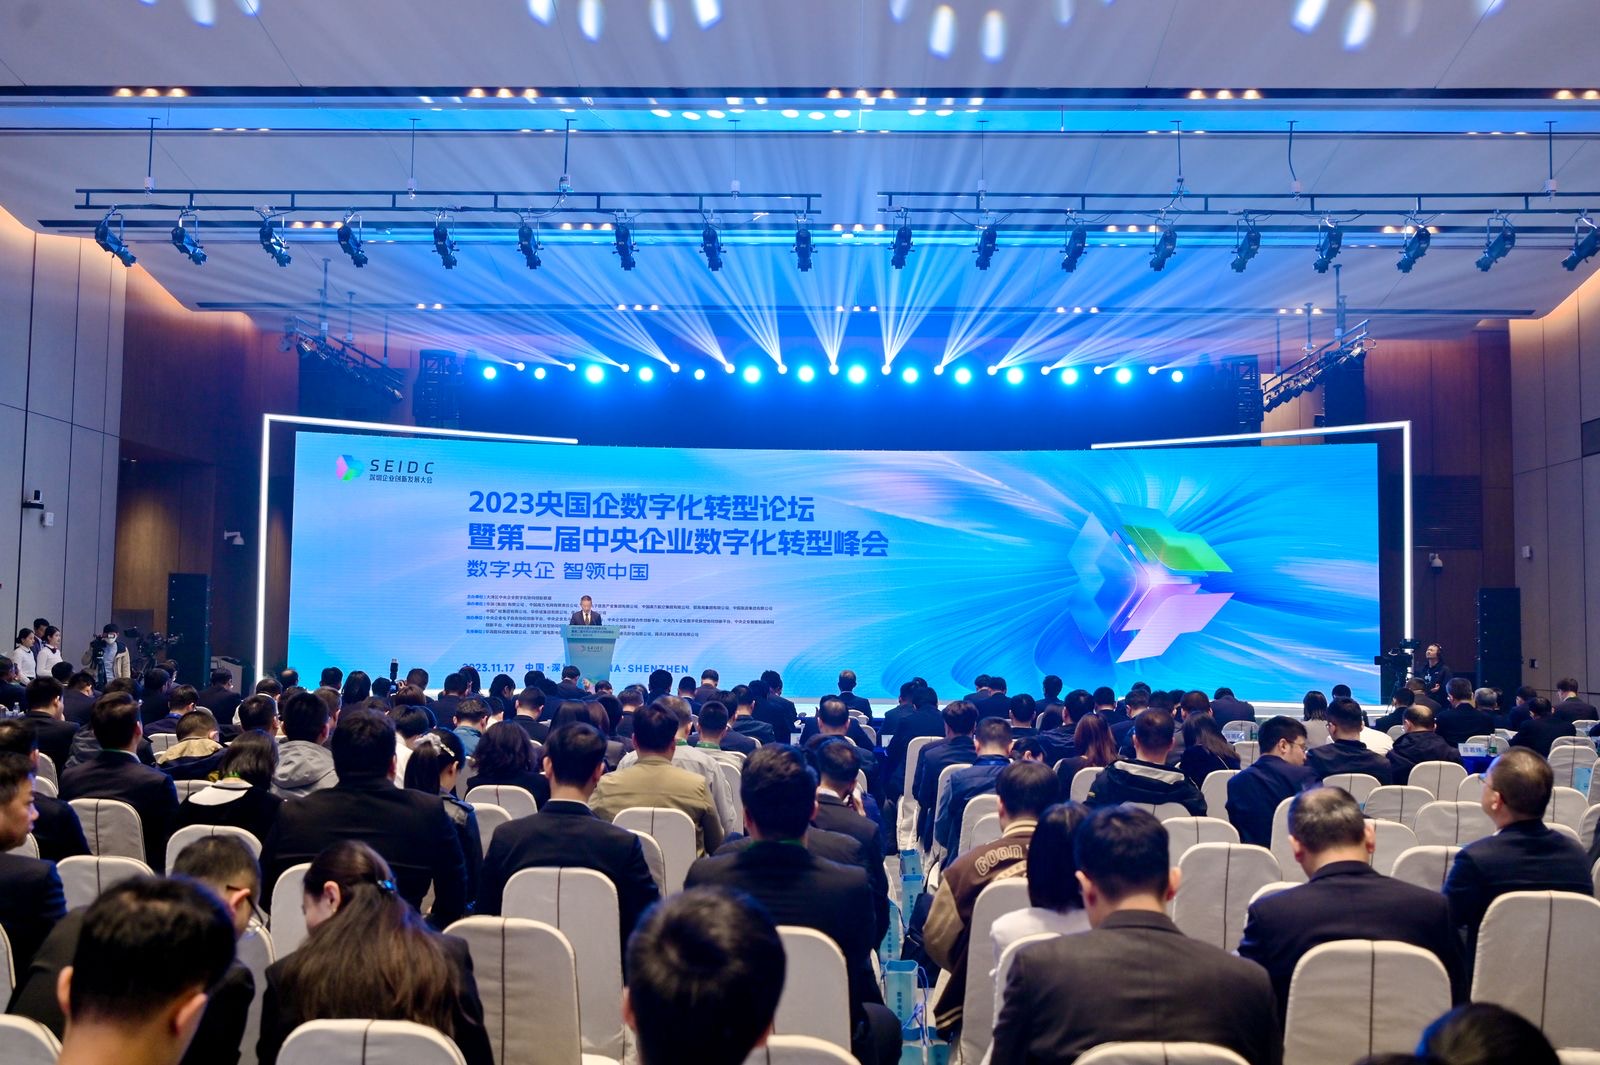 2023深圳企业创新发展大会 | 央国企数字化转型论坛暨第二届中央企业数字化转型峰会成功举办